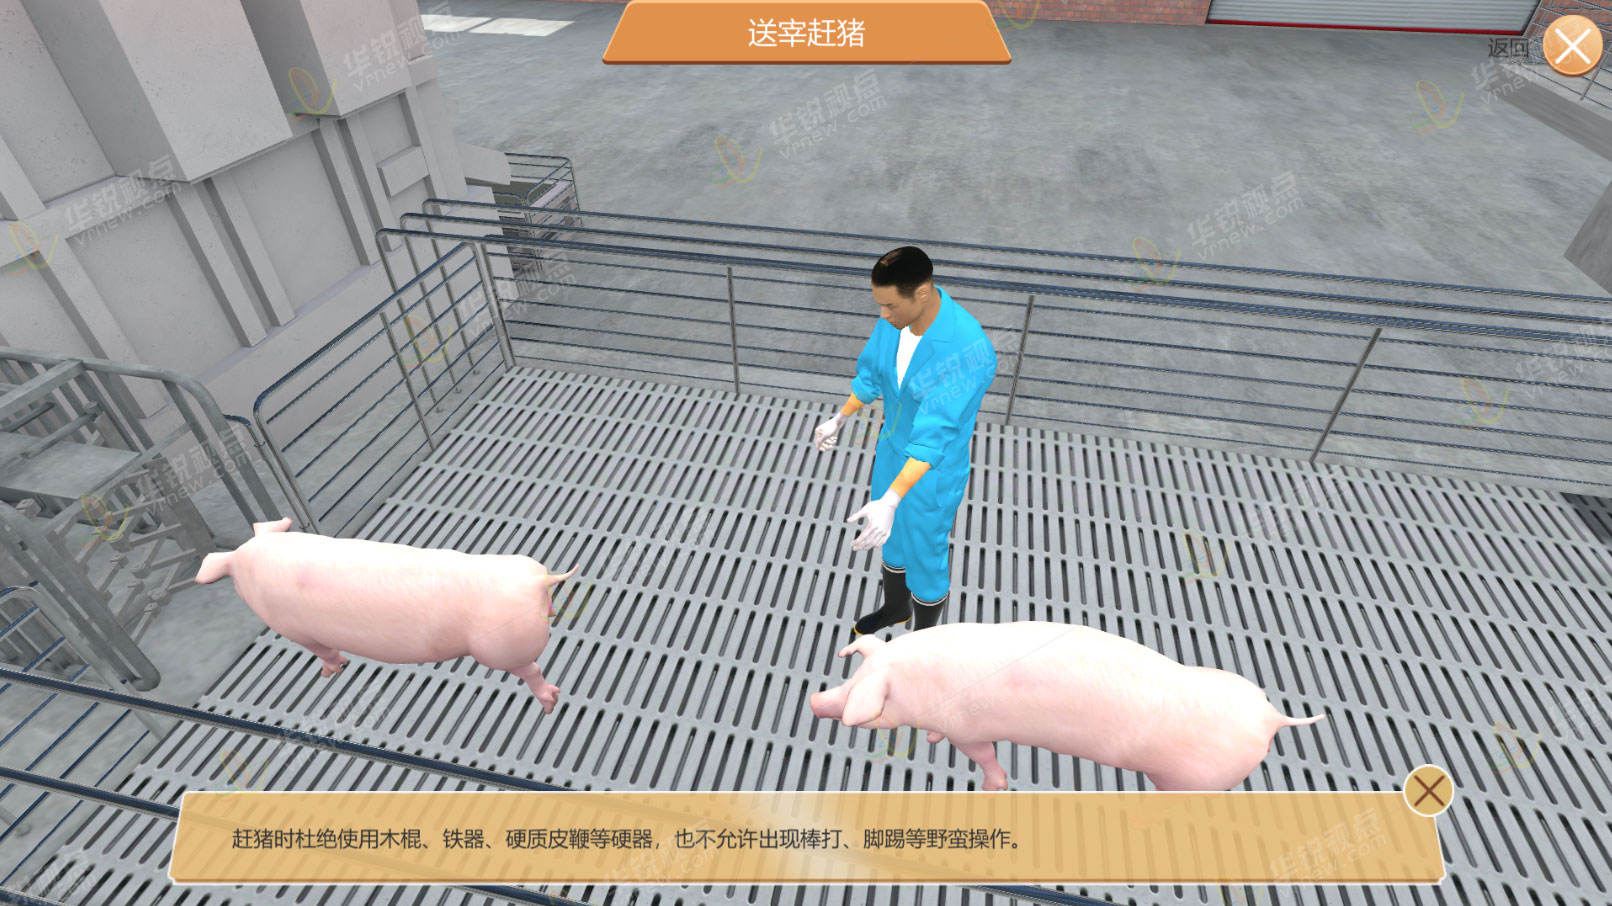 畜牧类VR课件之生猪养殖虚拟仿真教学软件